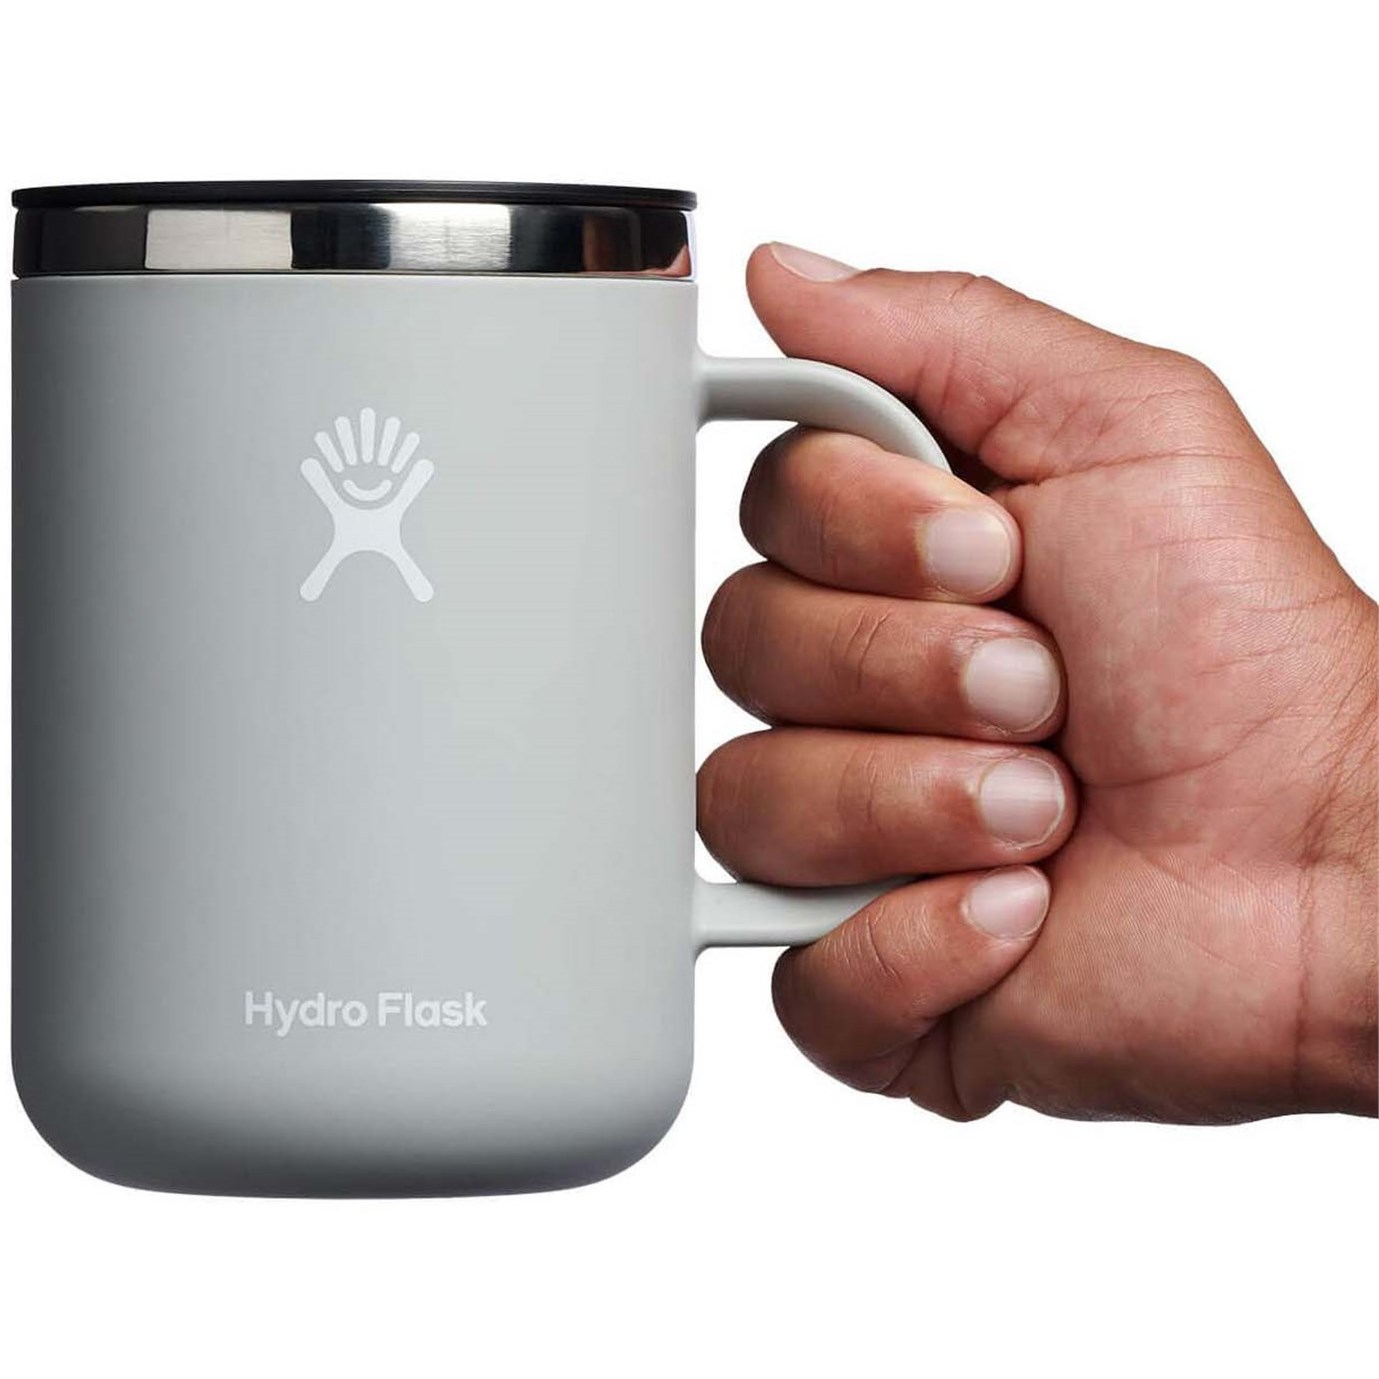 https://images.evo.com/imgp/zoom/200241/1038073/hydro-flask-24oz-coffee-mug-.jpg